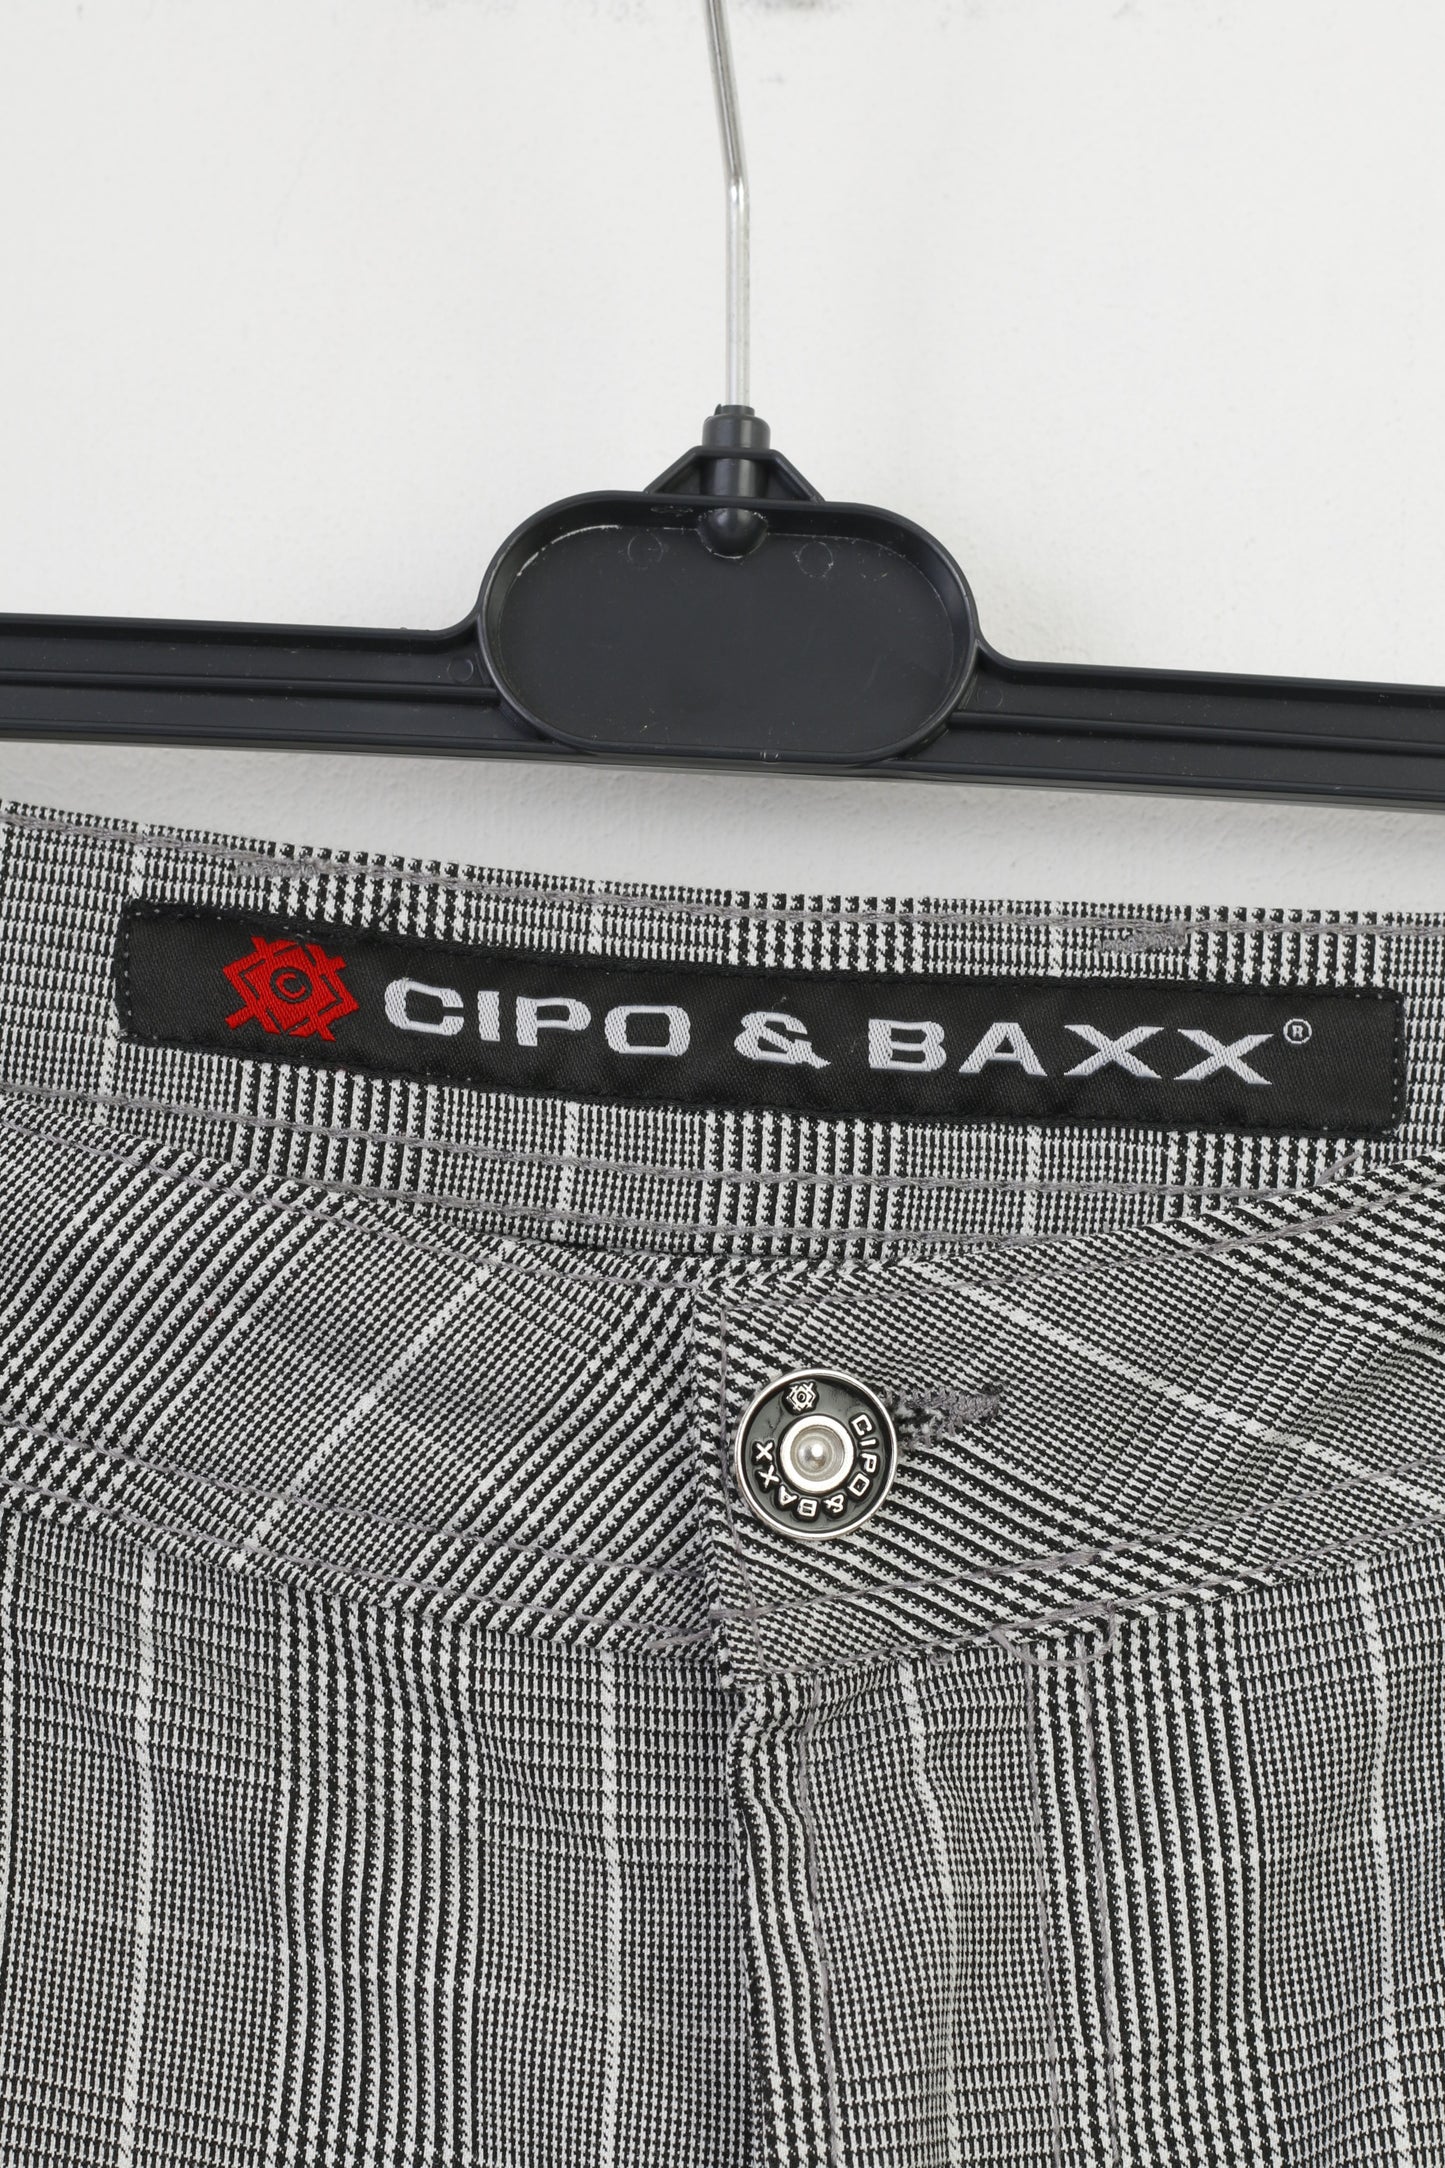 Cipo&Baxx Men 40 34 Shorts White Black Checkered Summer Top